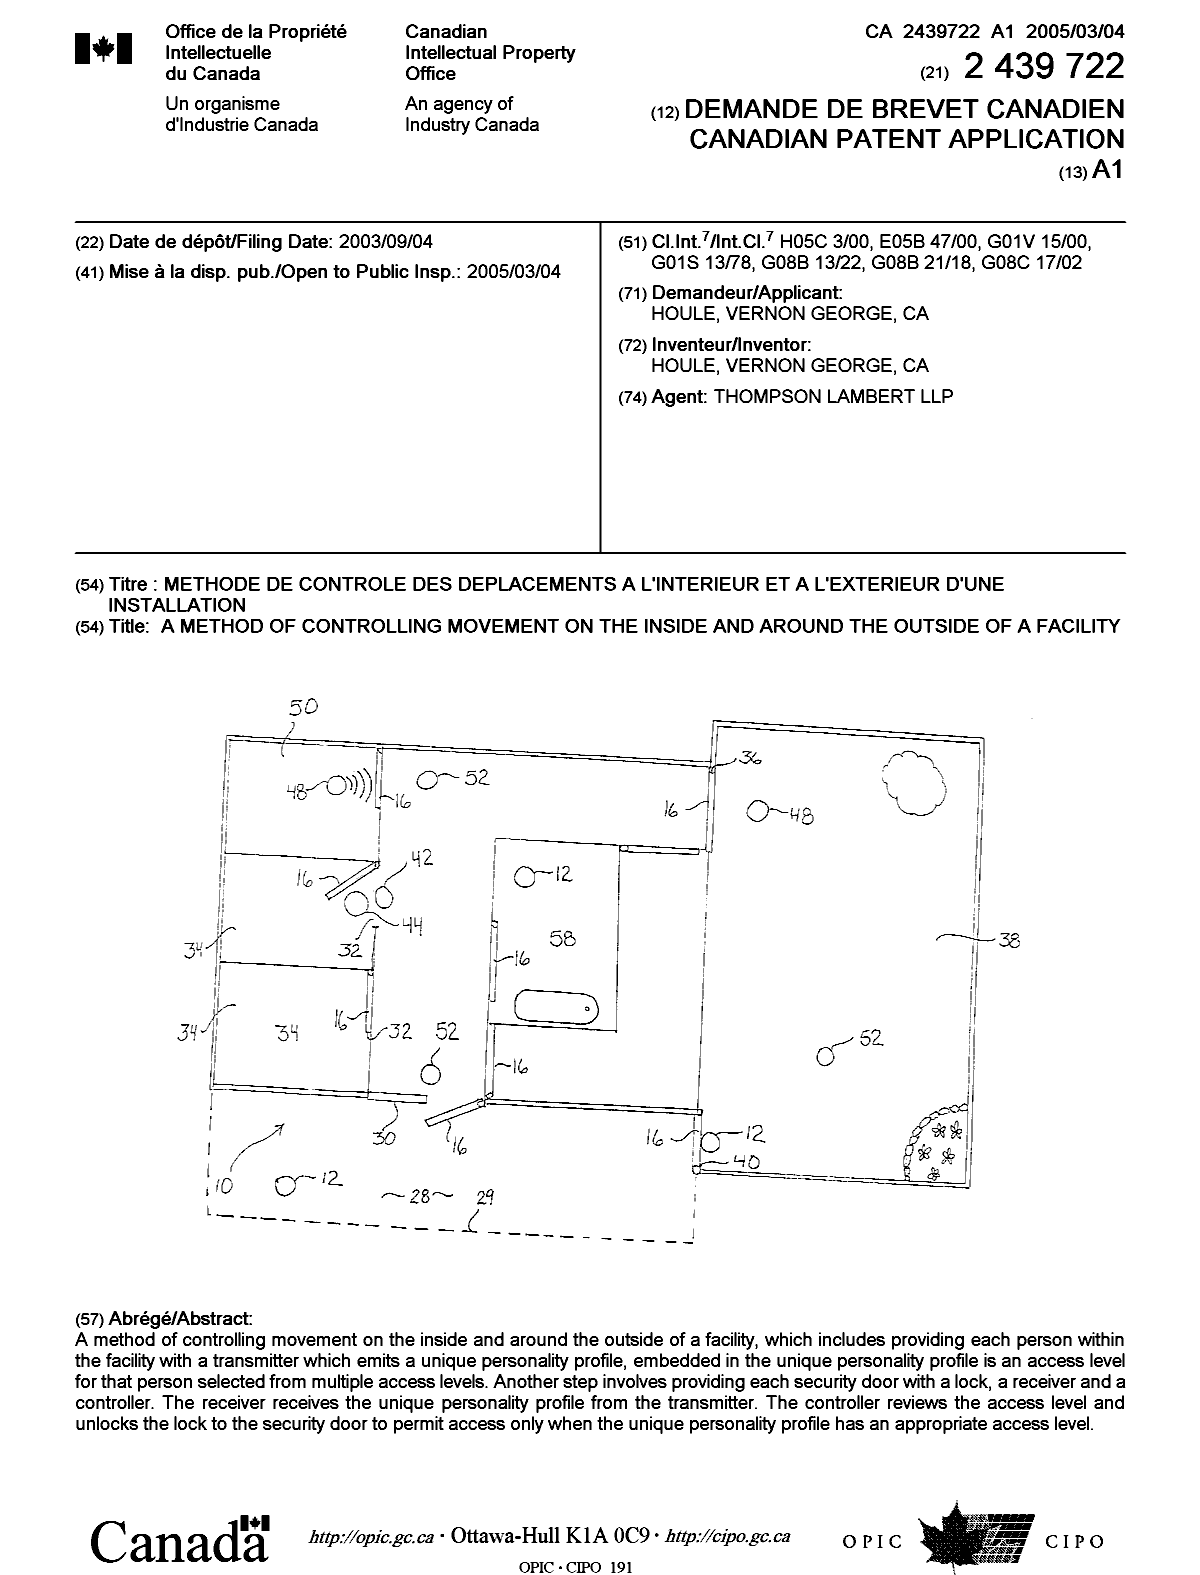 Document de brevet canadien 2439722. Page couverture 20050211. Image 1 de 1